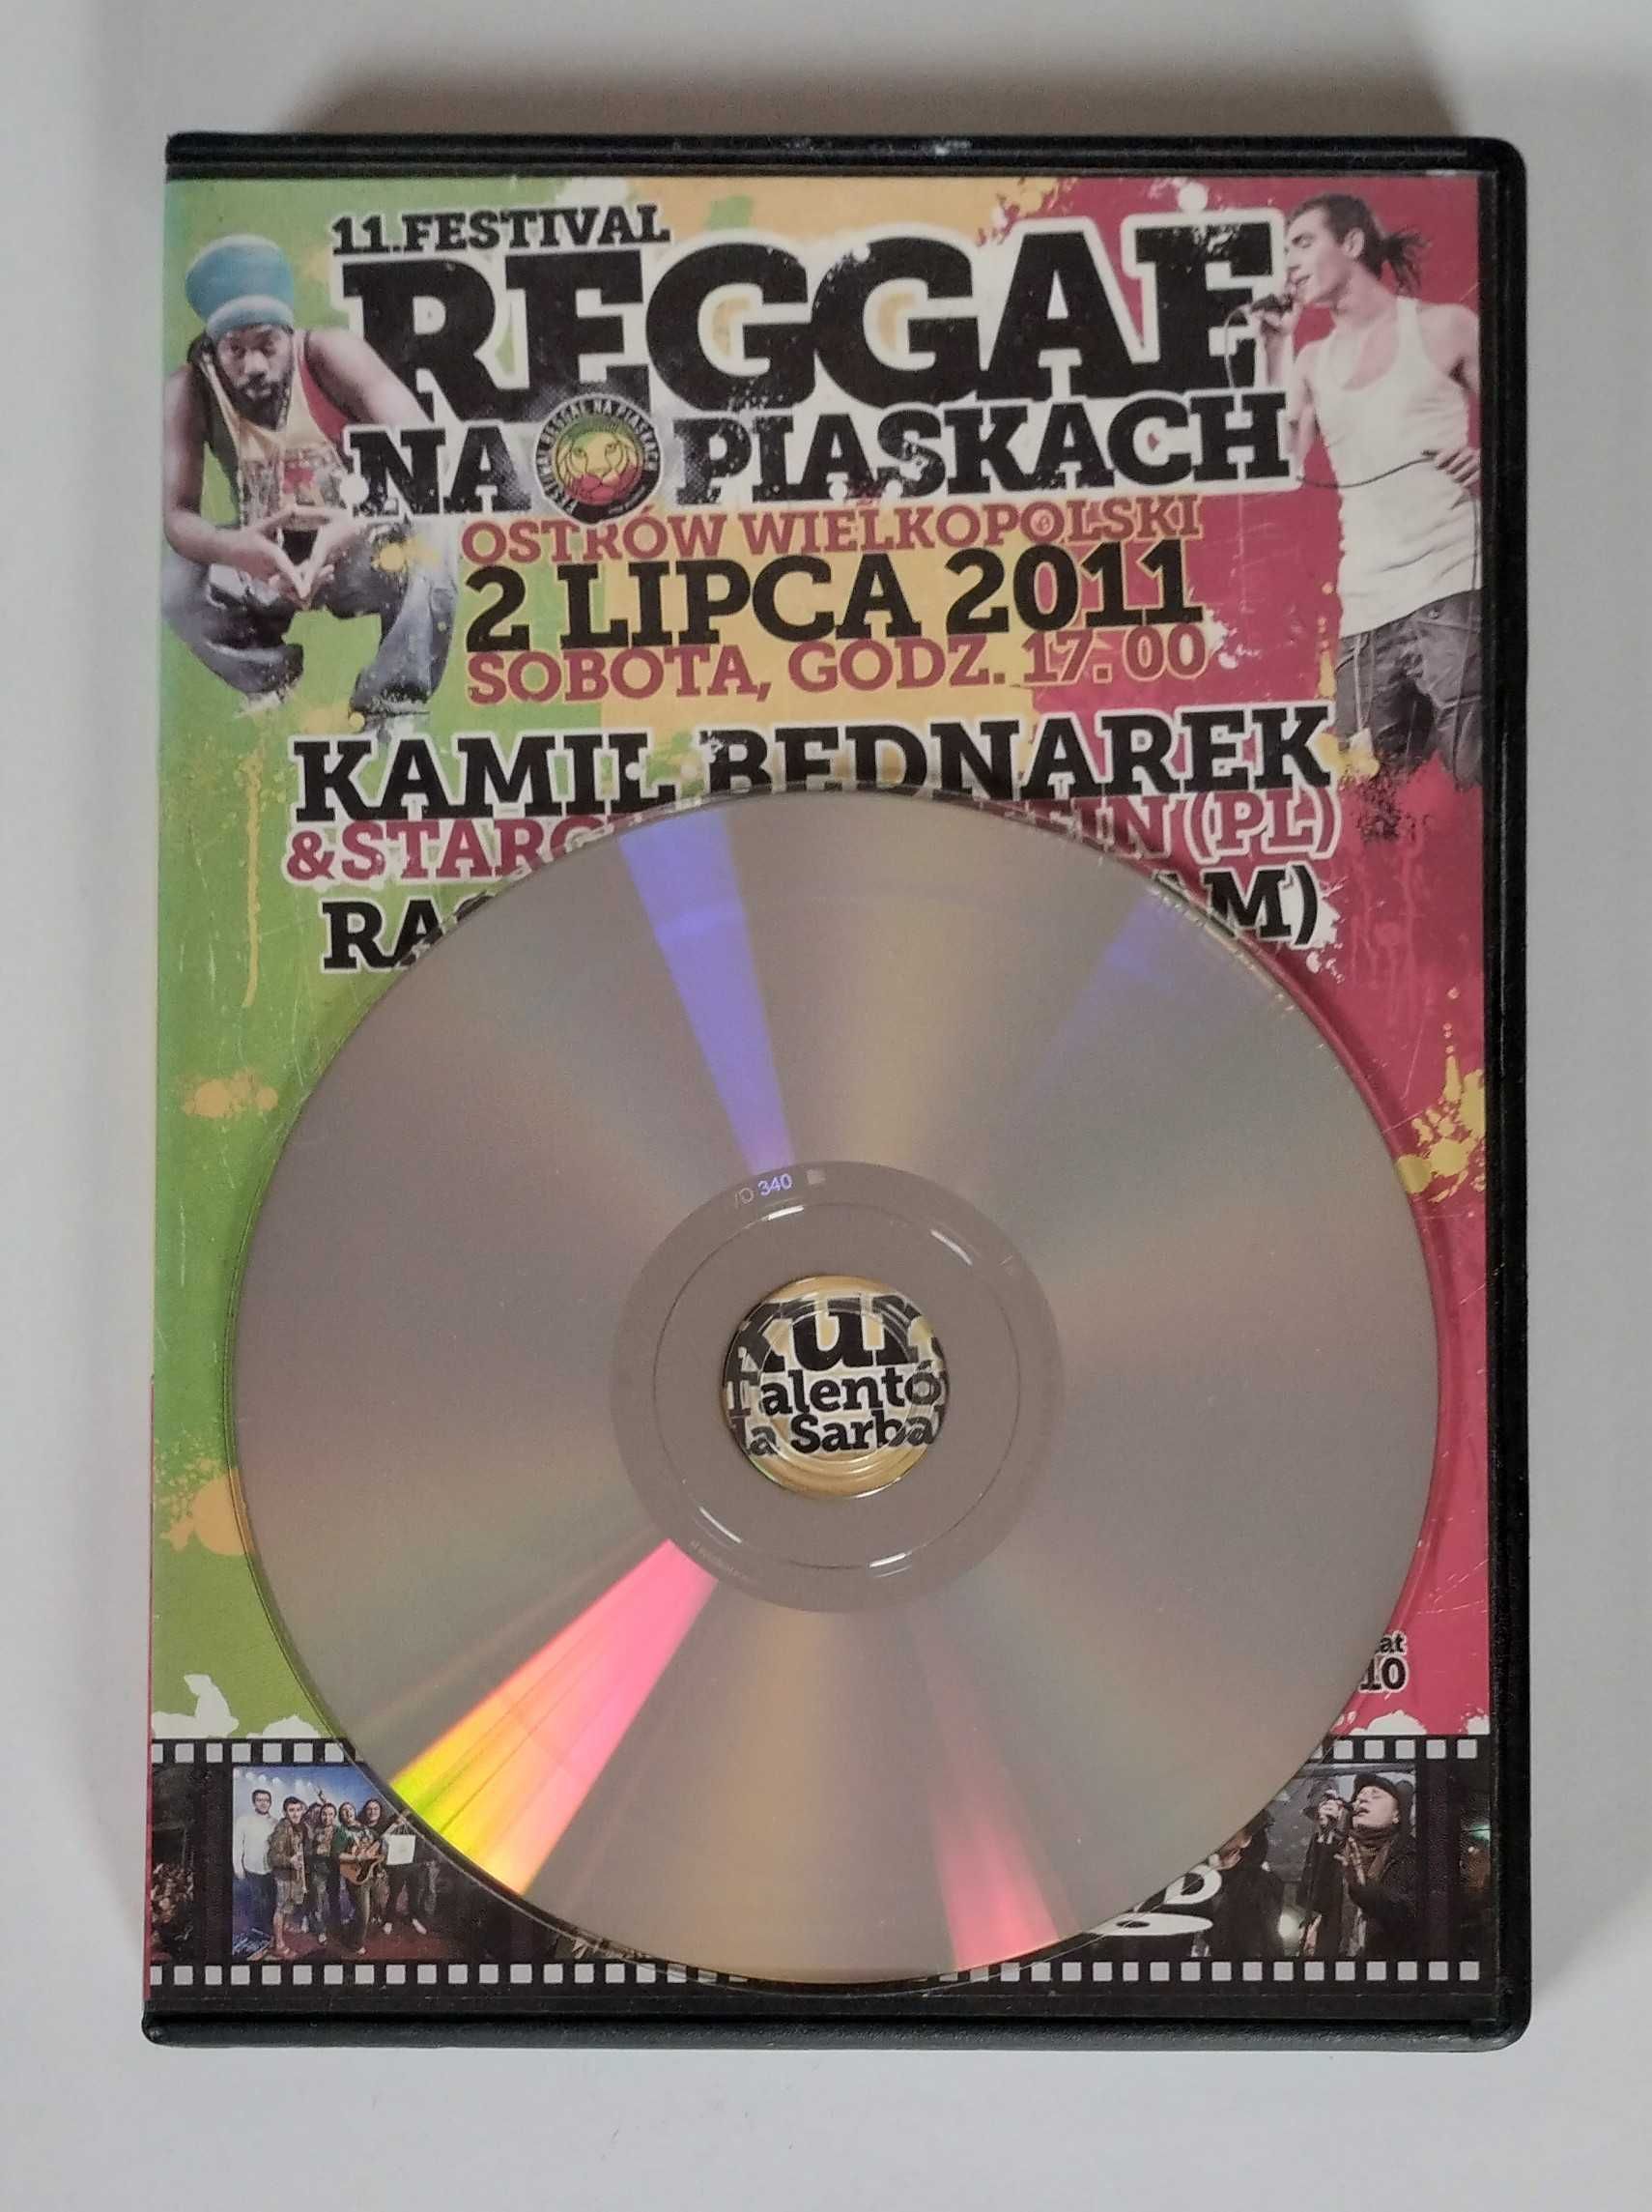 Reggae Na Piaskach 2011  DVD Bakshish, Raggafaya, Bednarek, Bethel